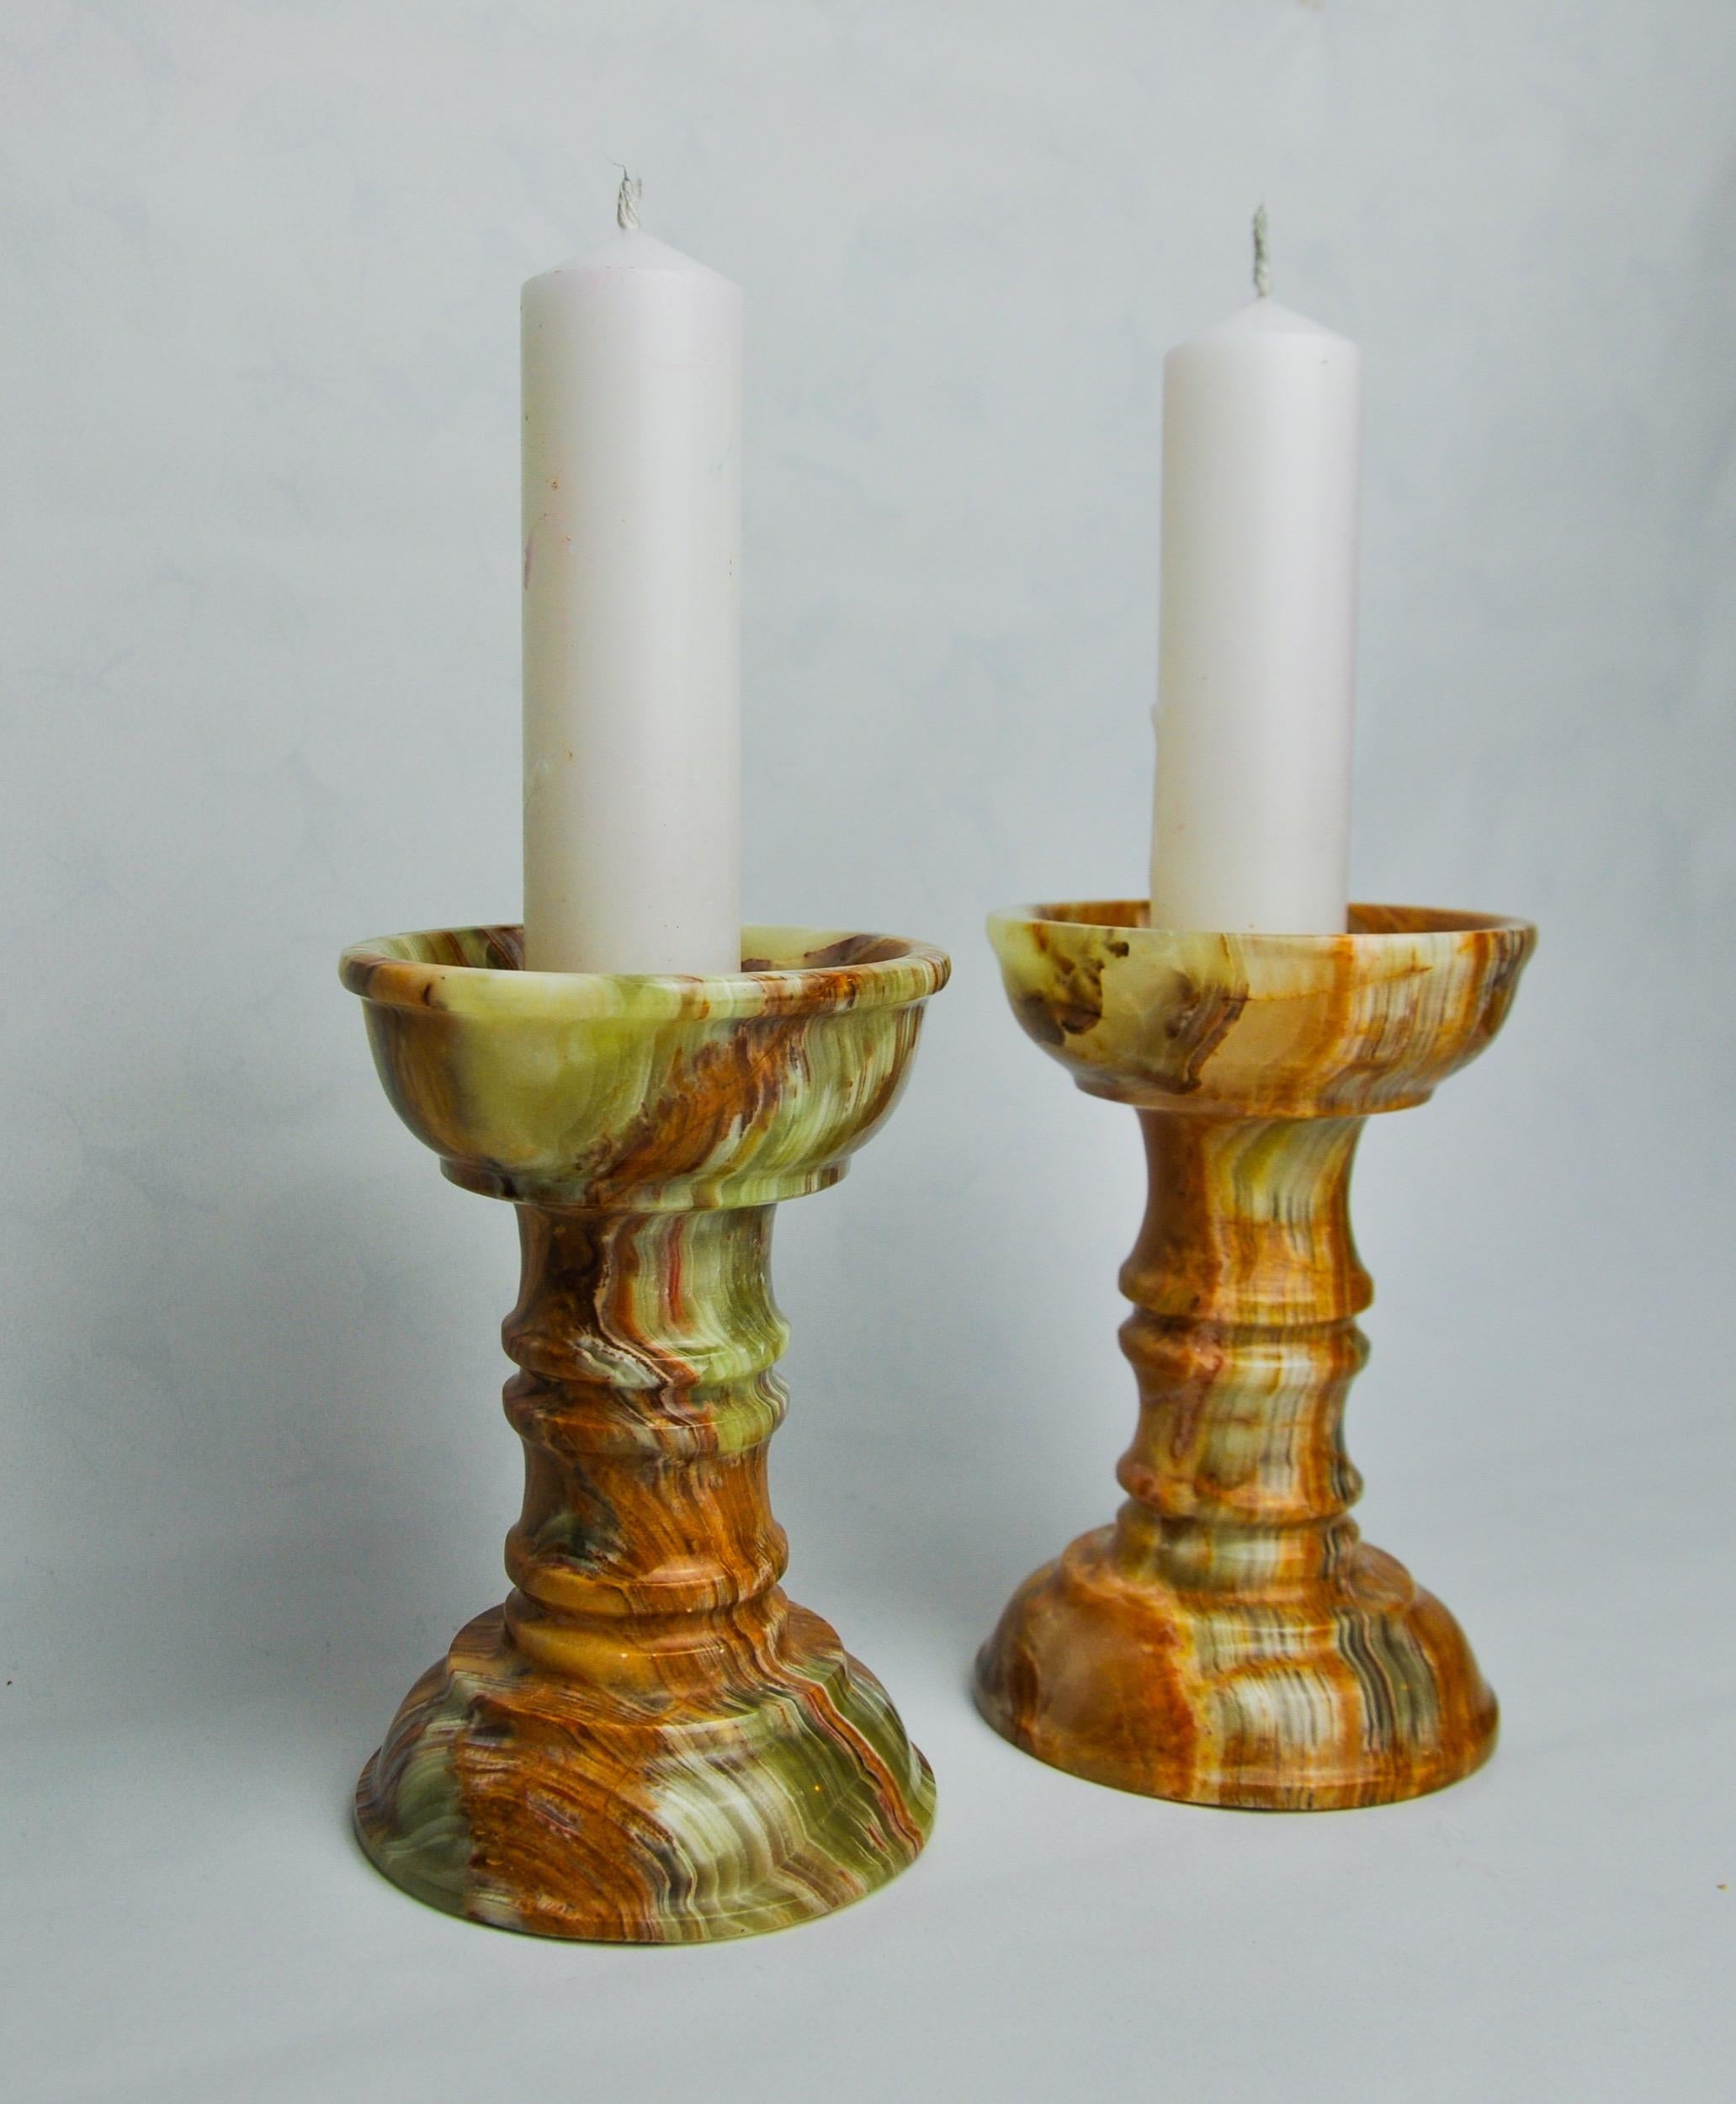 Sehr schönes Paar Kerzenständer aus Onyx und Messing, entworfen und hergestellt in Italien in den 1980er Jahren. Diese Kerzenständer sind noch in der Originalverpackung. Hervorragendes Designobjekt, das Ihr Interieur wunderbar dekorieren wird.